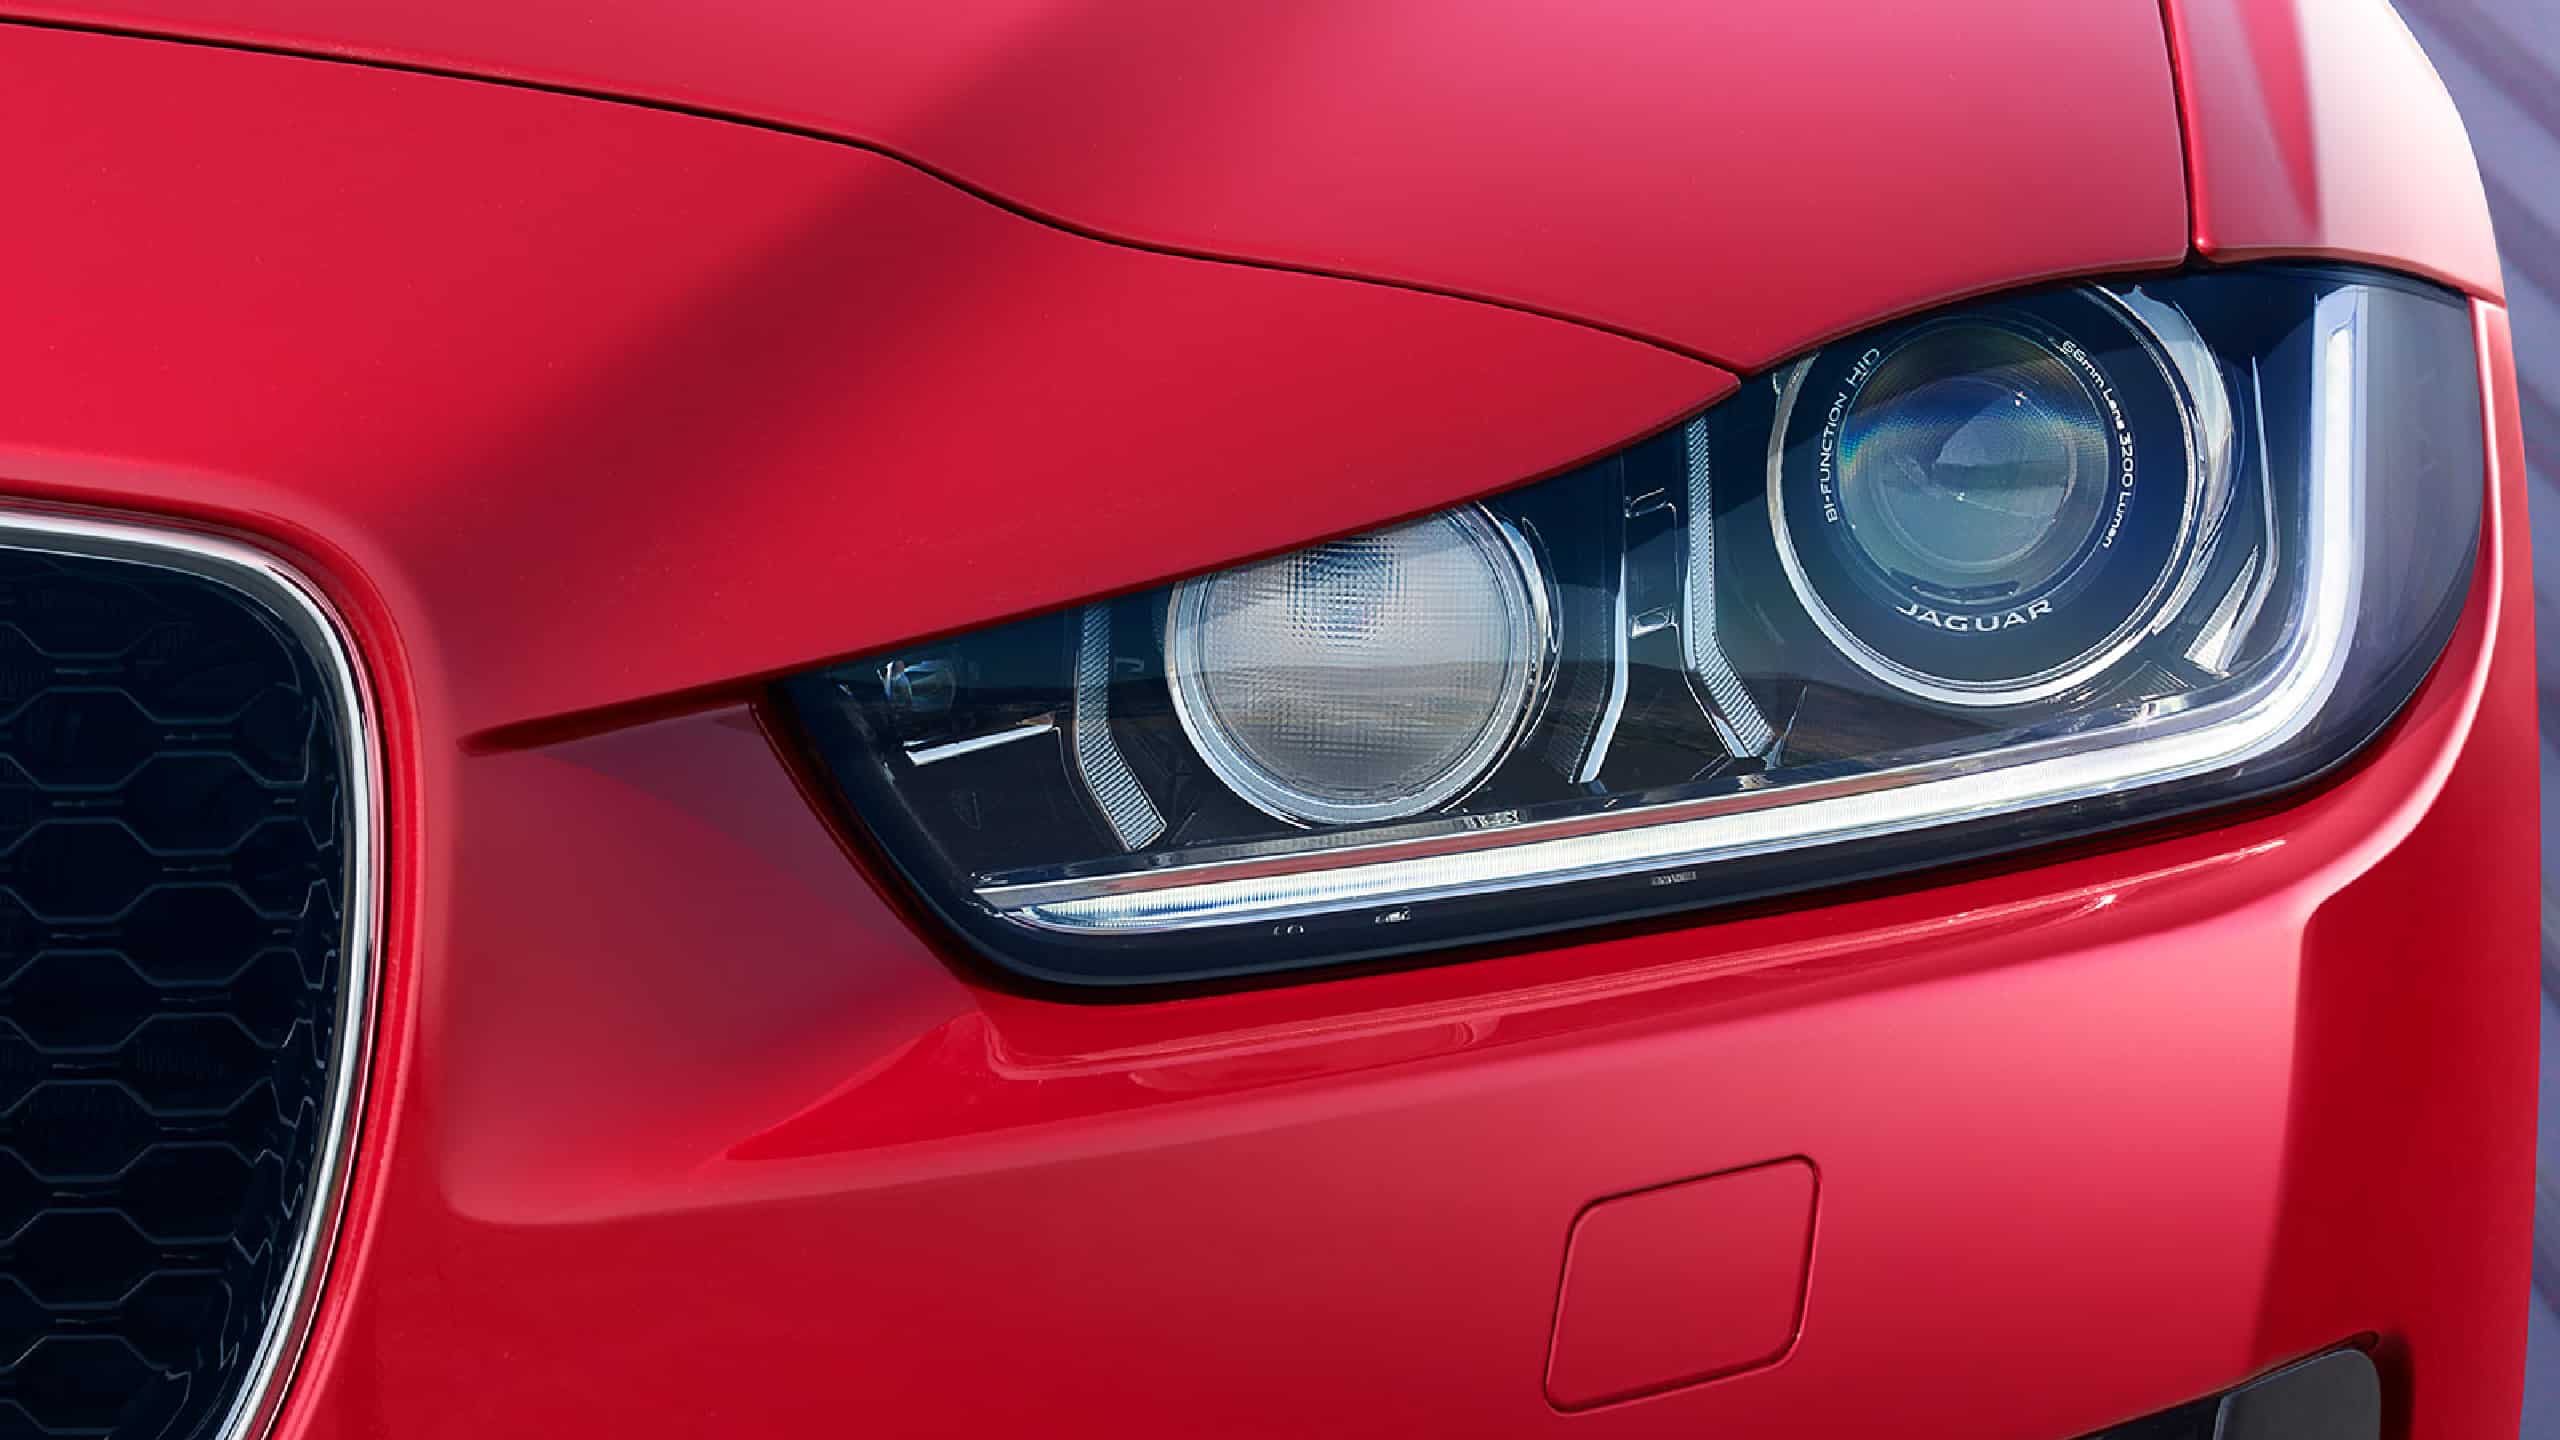 Jaguar XE Head Light Details